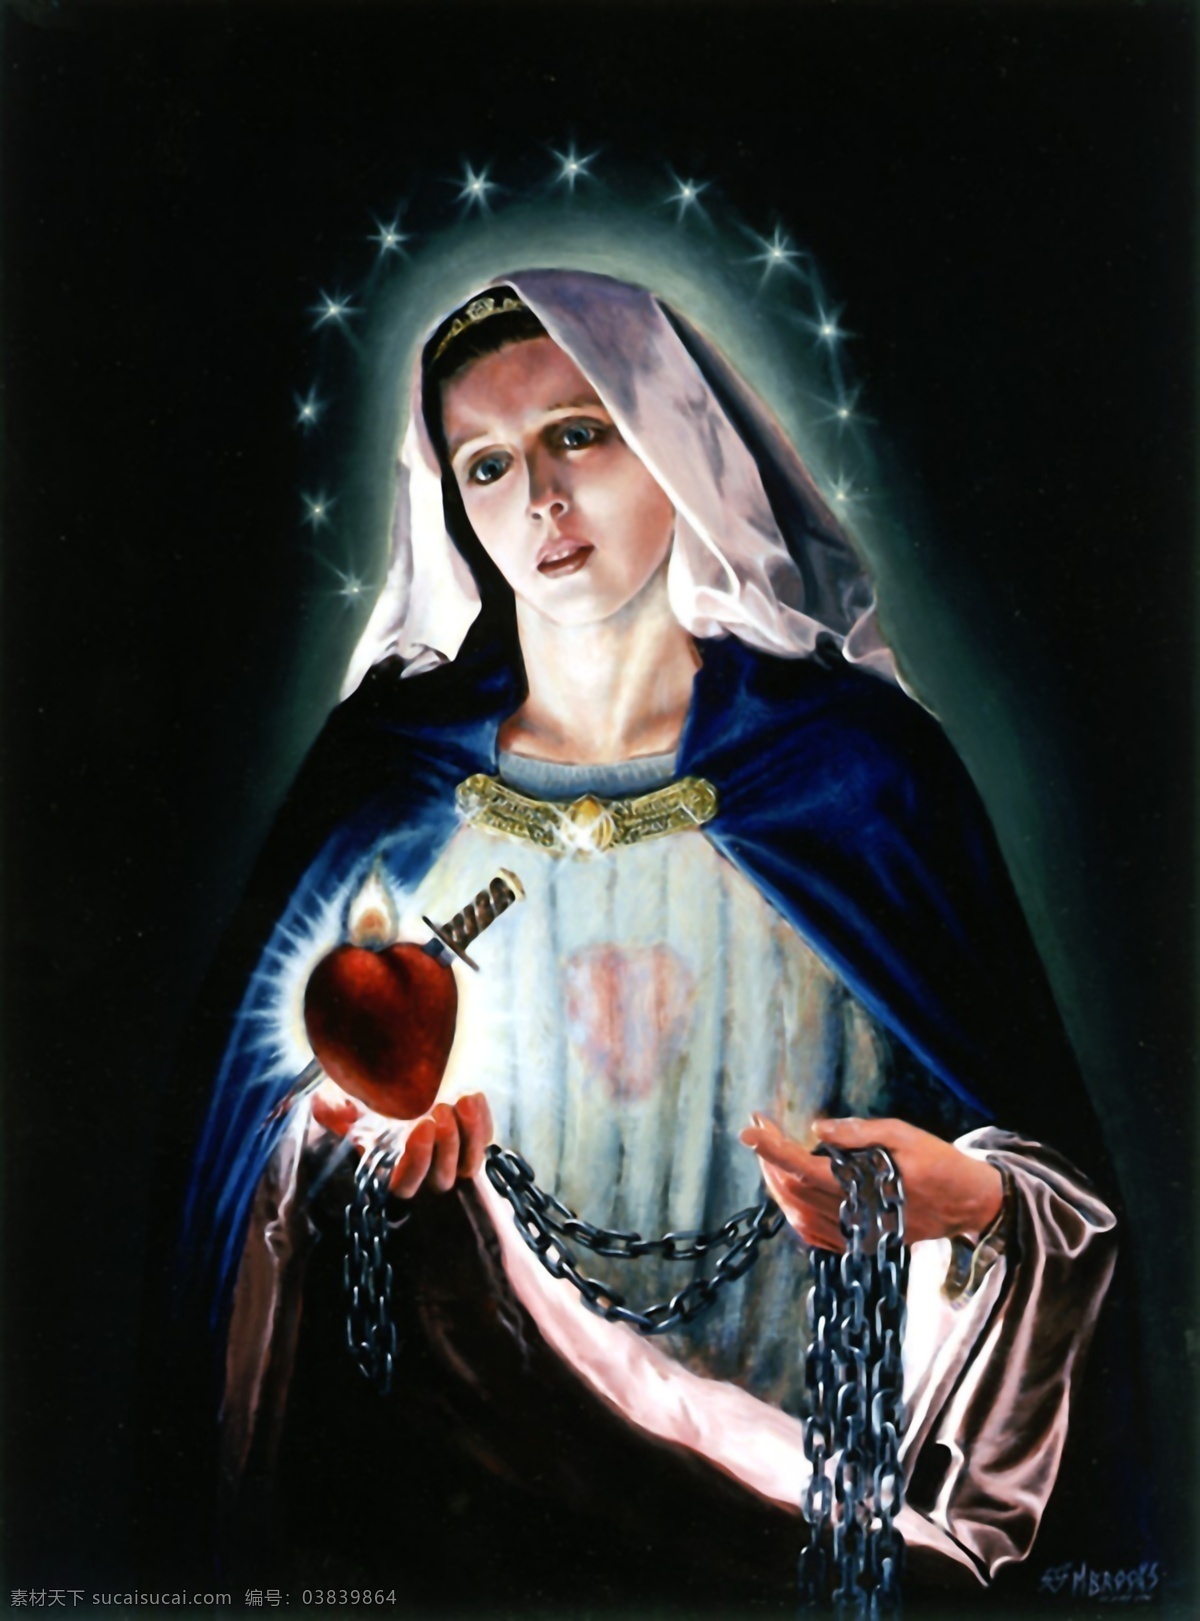 圣母圣心 玛利亚 圣心 圣母玛利亚 天主教 人物图库 生活人物